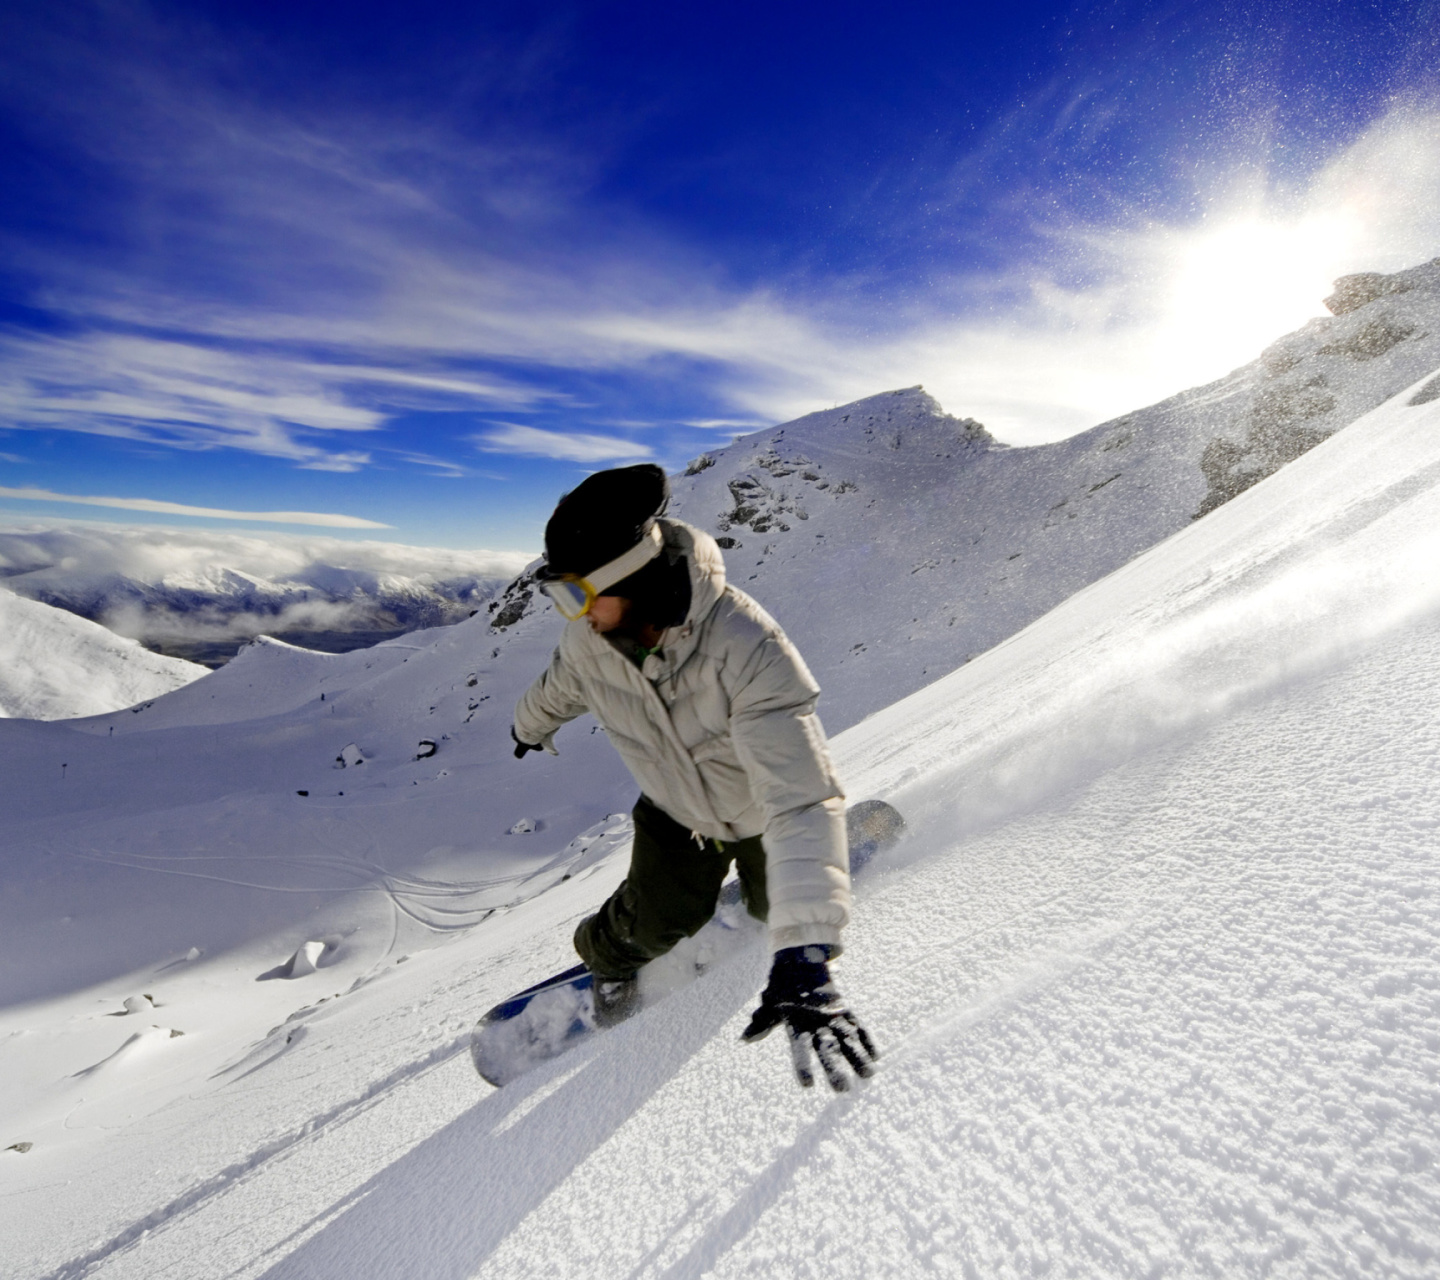 Outdoor activities as Snowboarding screenshot #1 1440x1280